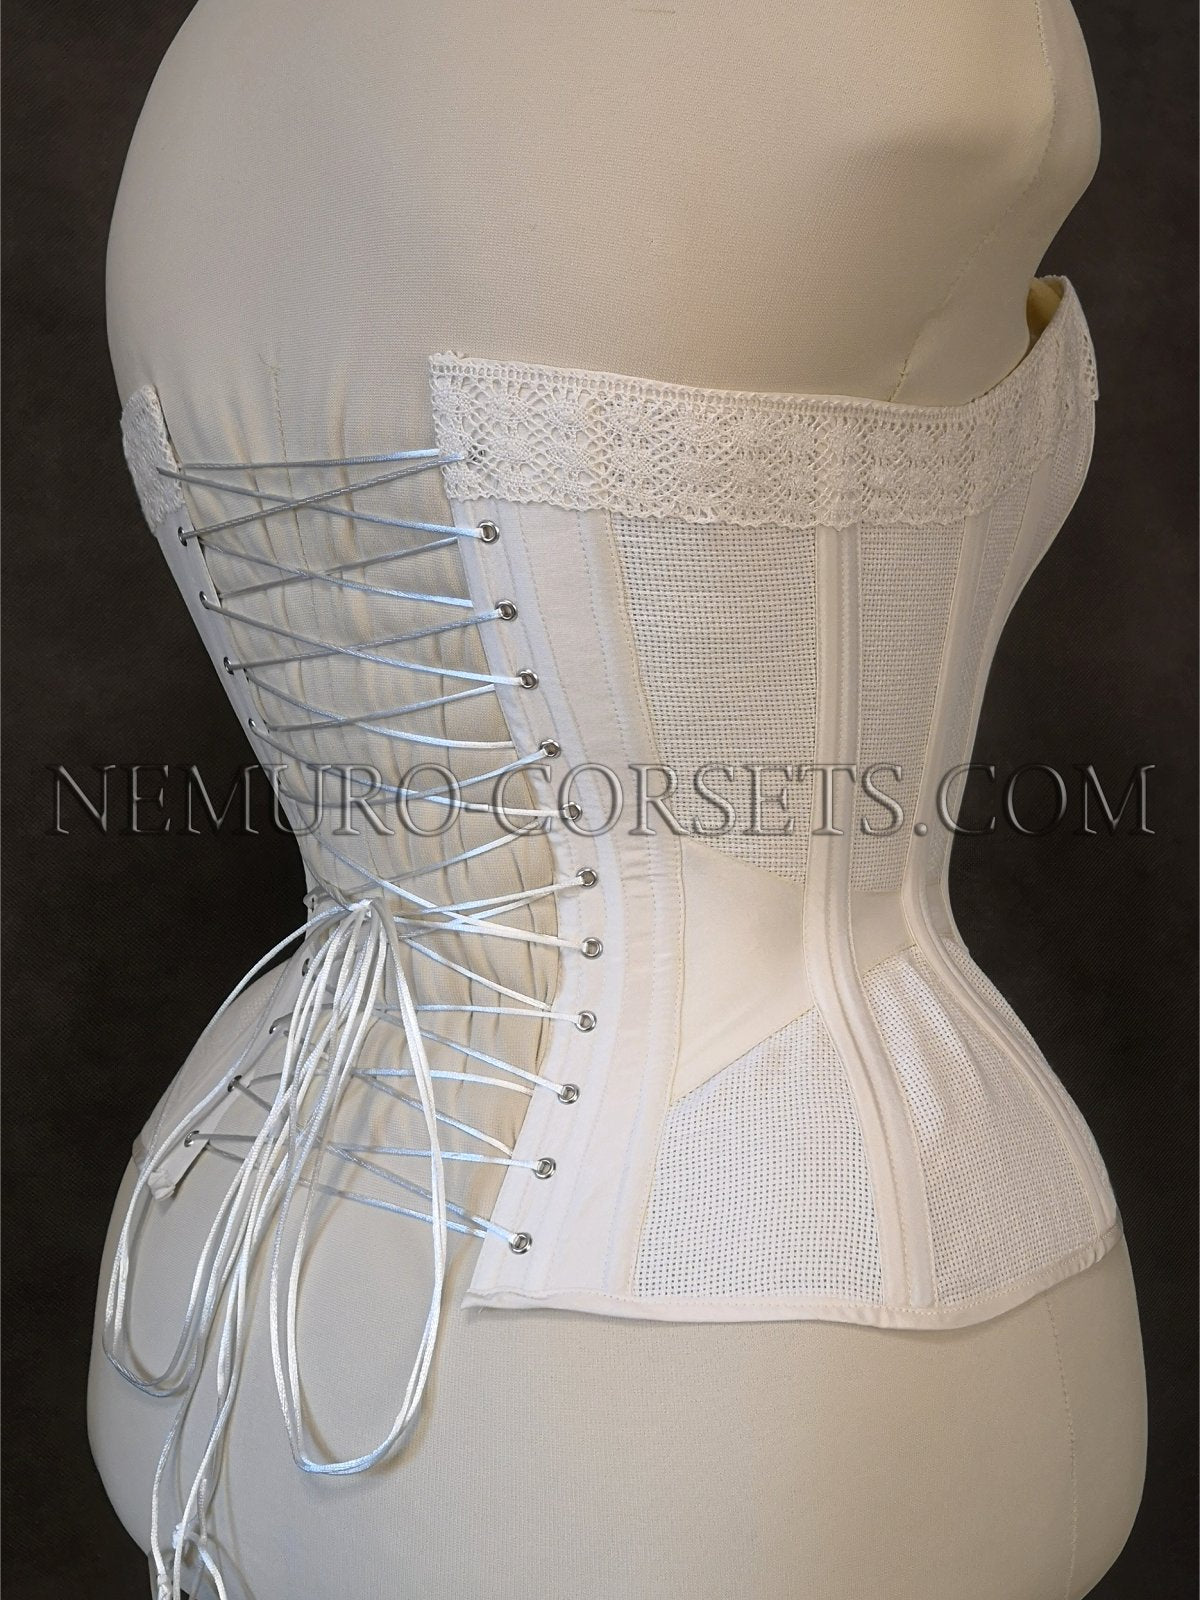 https://nemuro-corsets.com/cdn/shop/products/IMG_20210615_162659_1024x1024@2x.jpg?v=1629868205